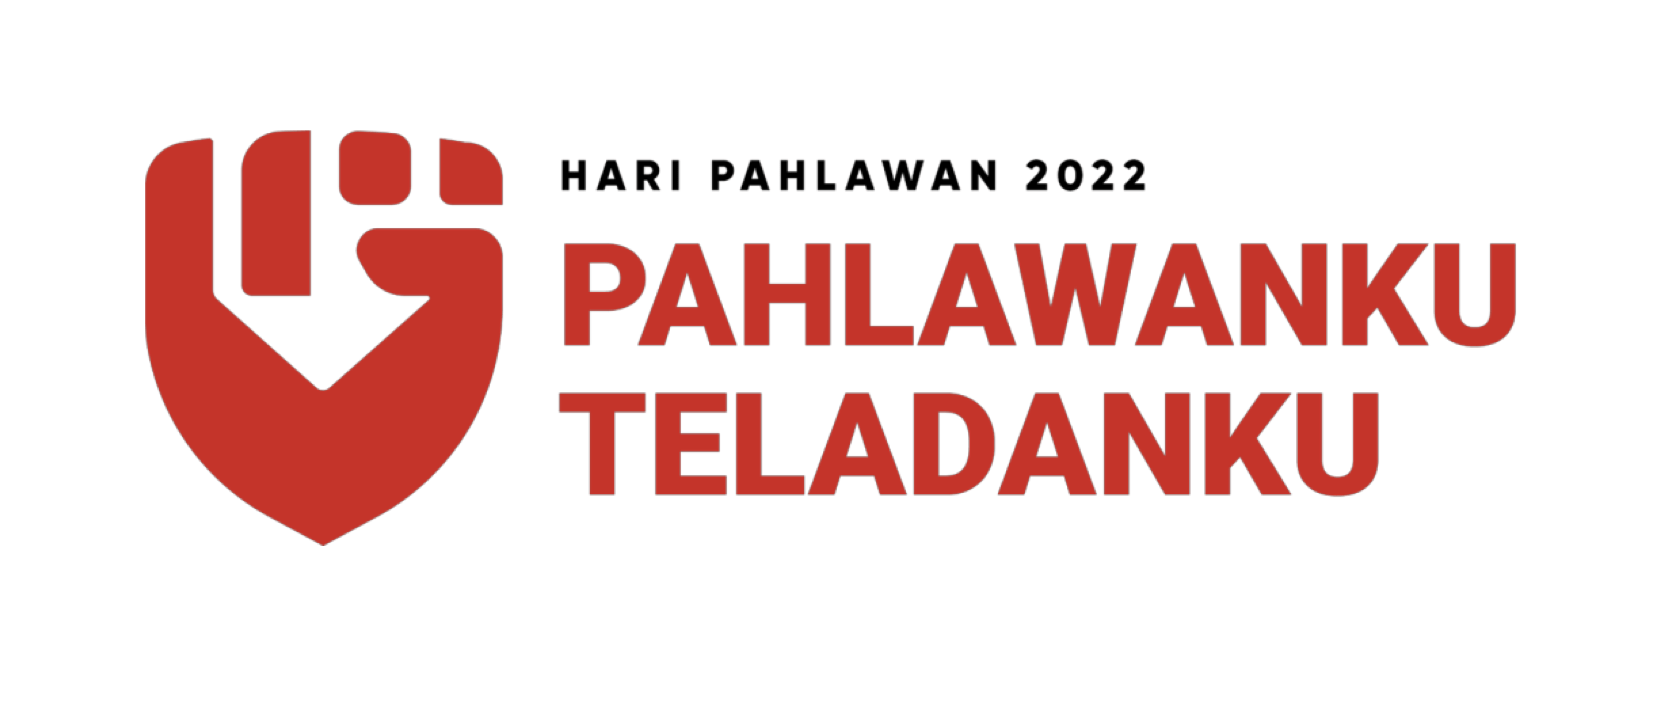 Pedoman Resmi dan Logo Baru untuk Hari Pahlawan Nasional 2022